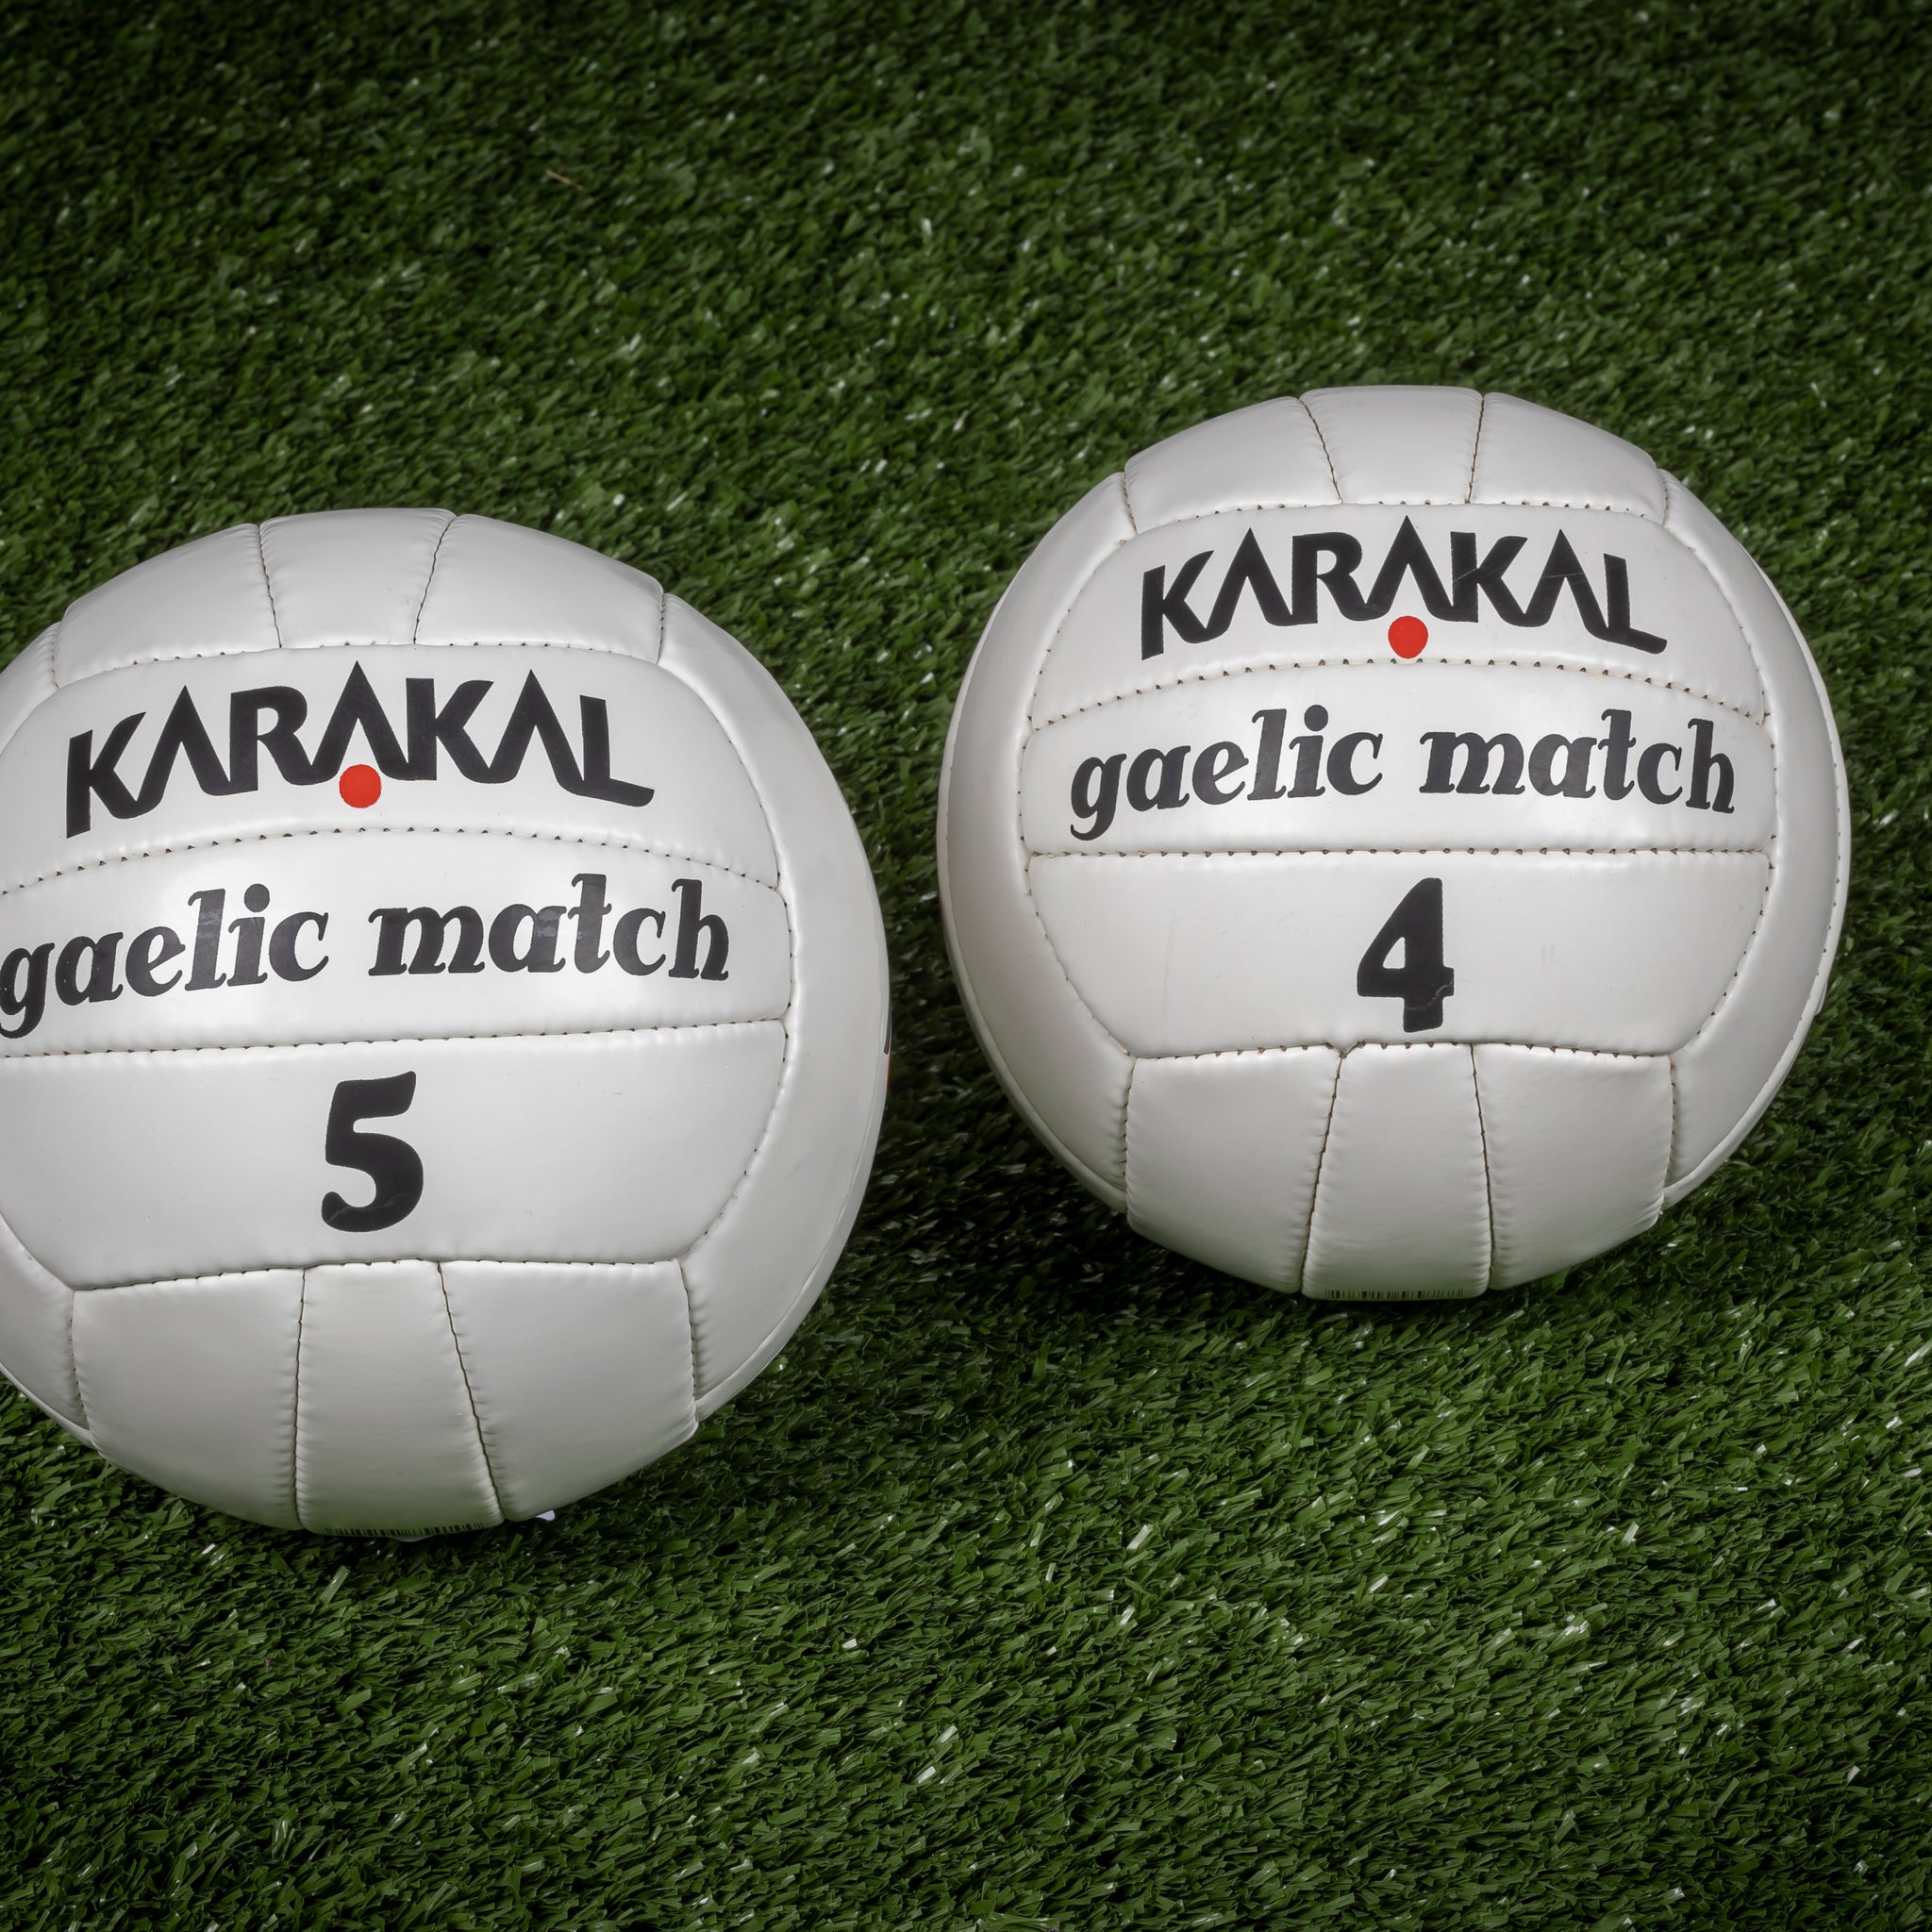 Karakal Gaelic Match Ball Size 4